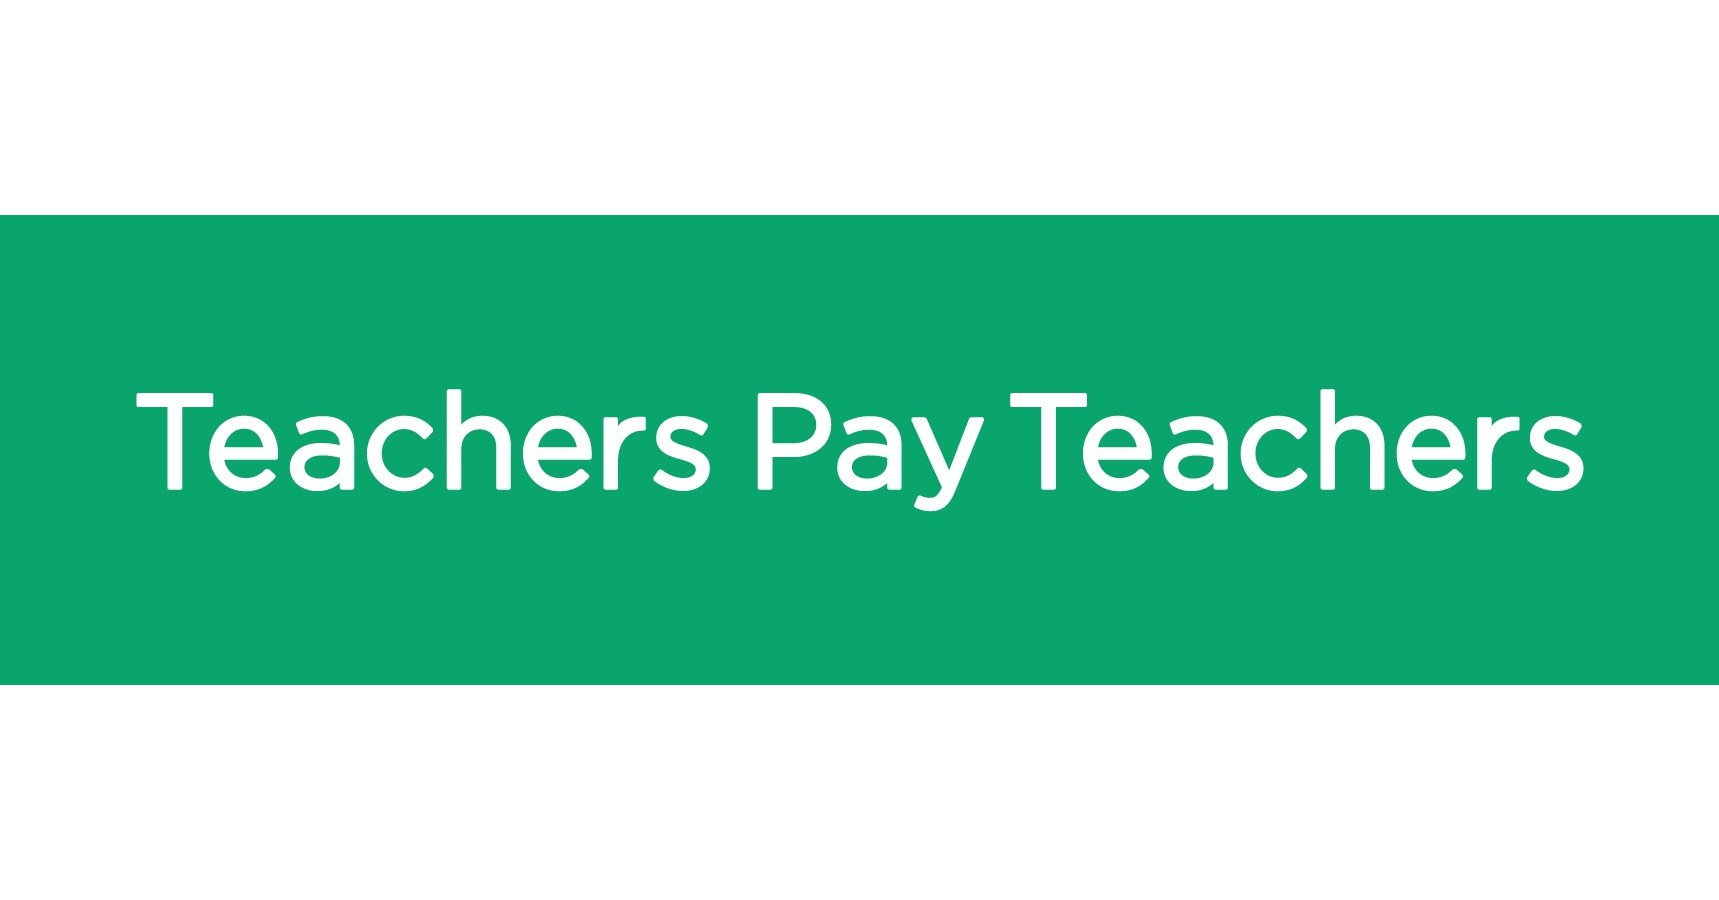 Teachers Pay Teachers Alternatives